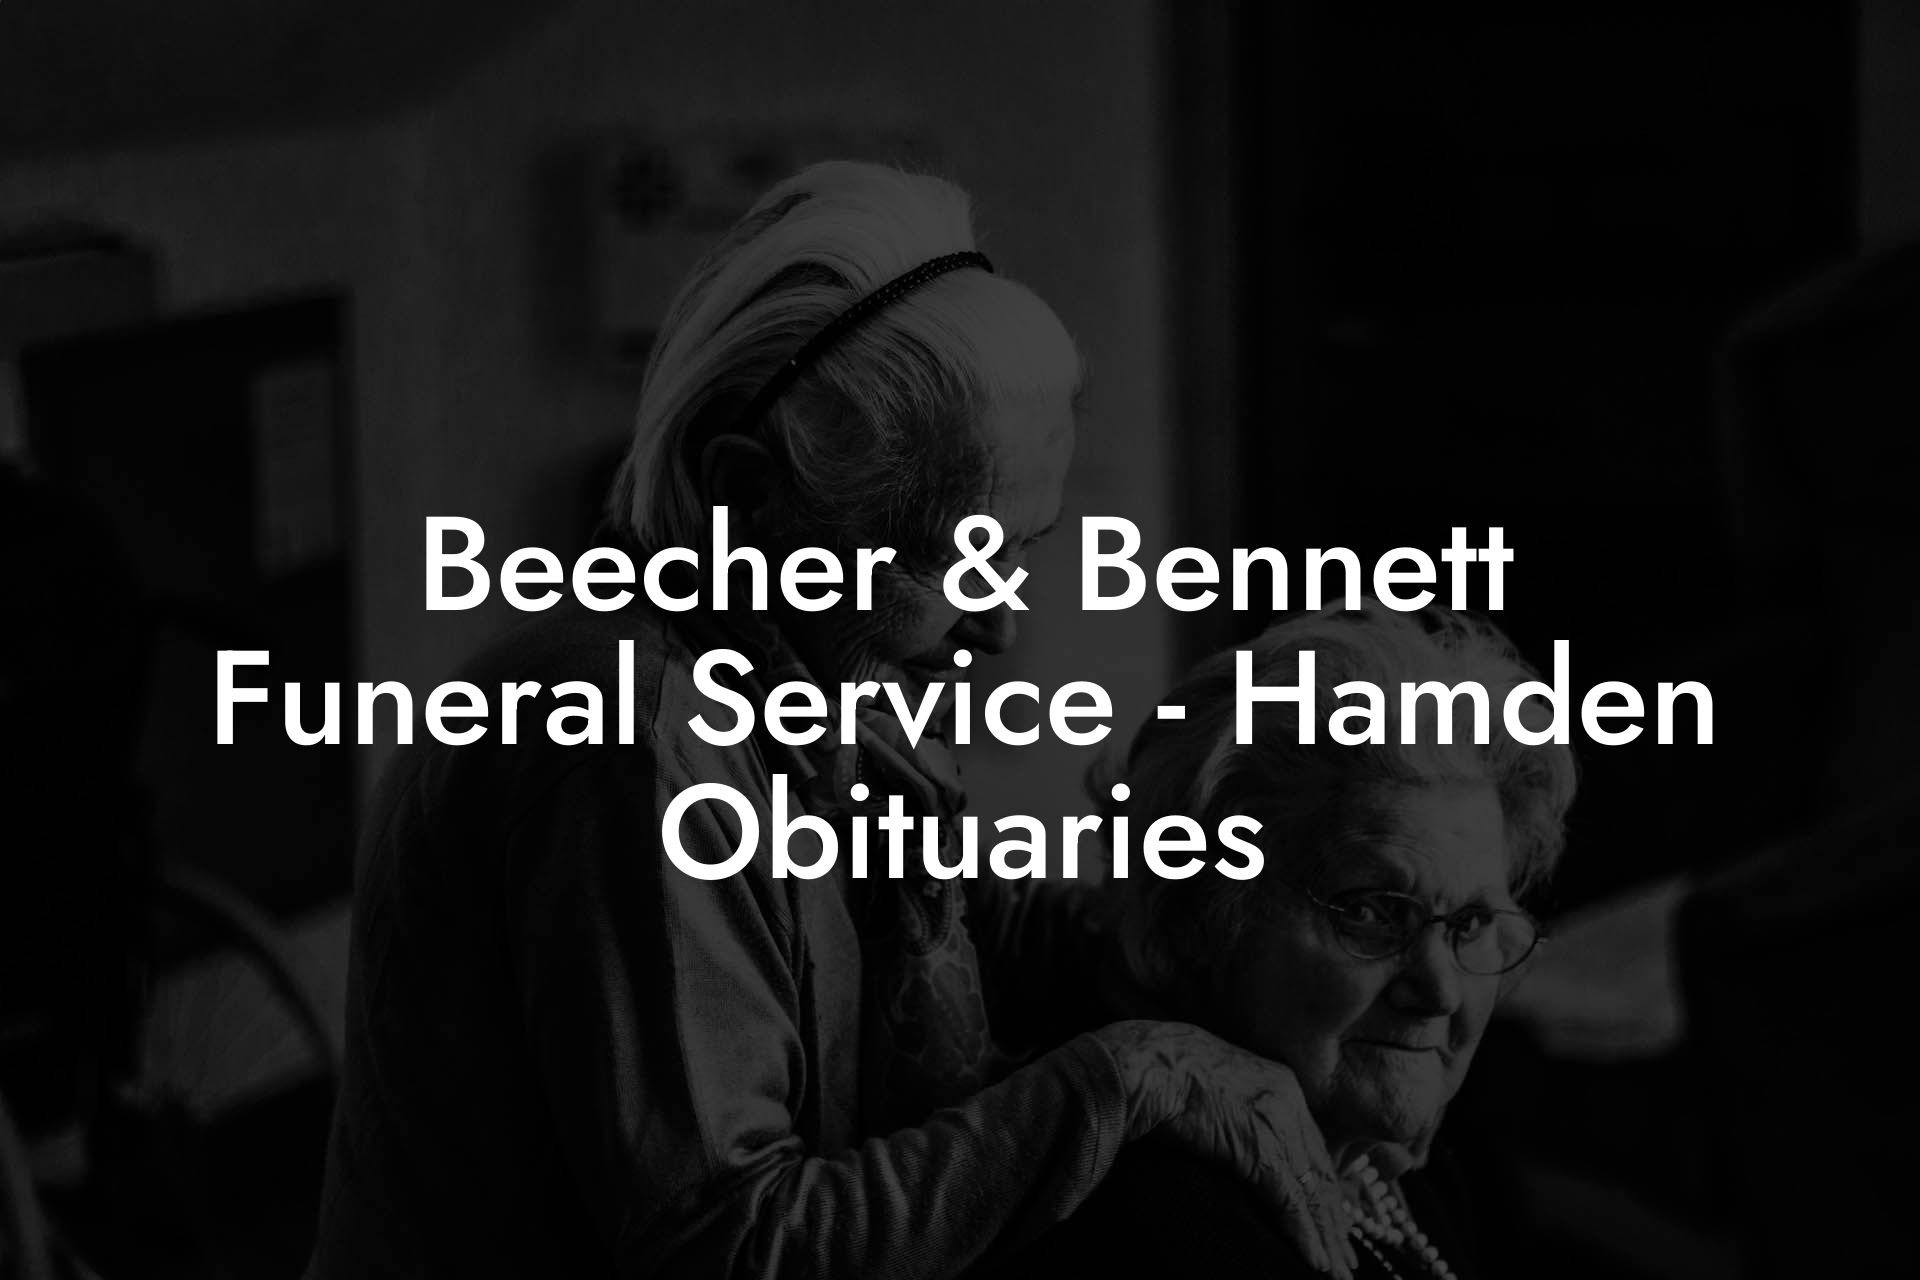 Beecher & Bennett Funeral Service - Hamden Obituaries